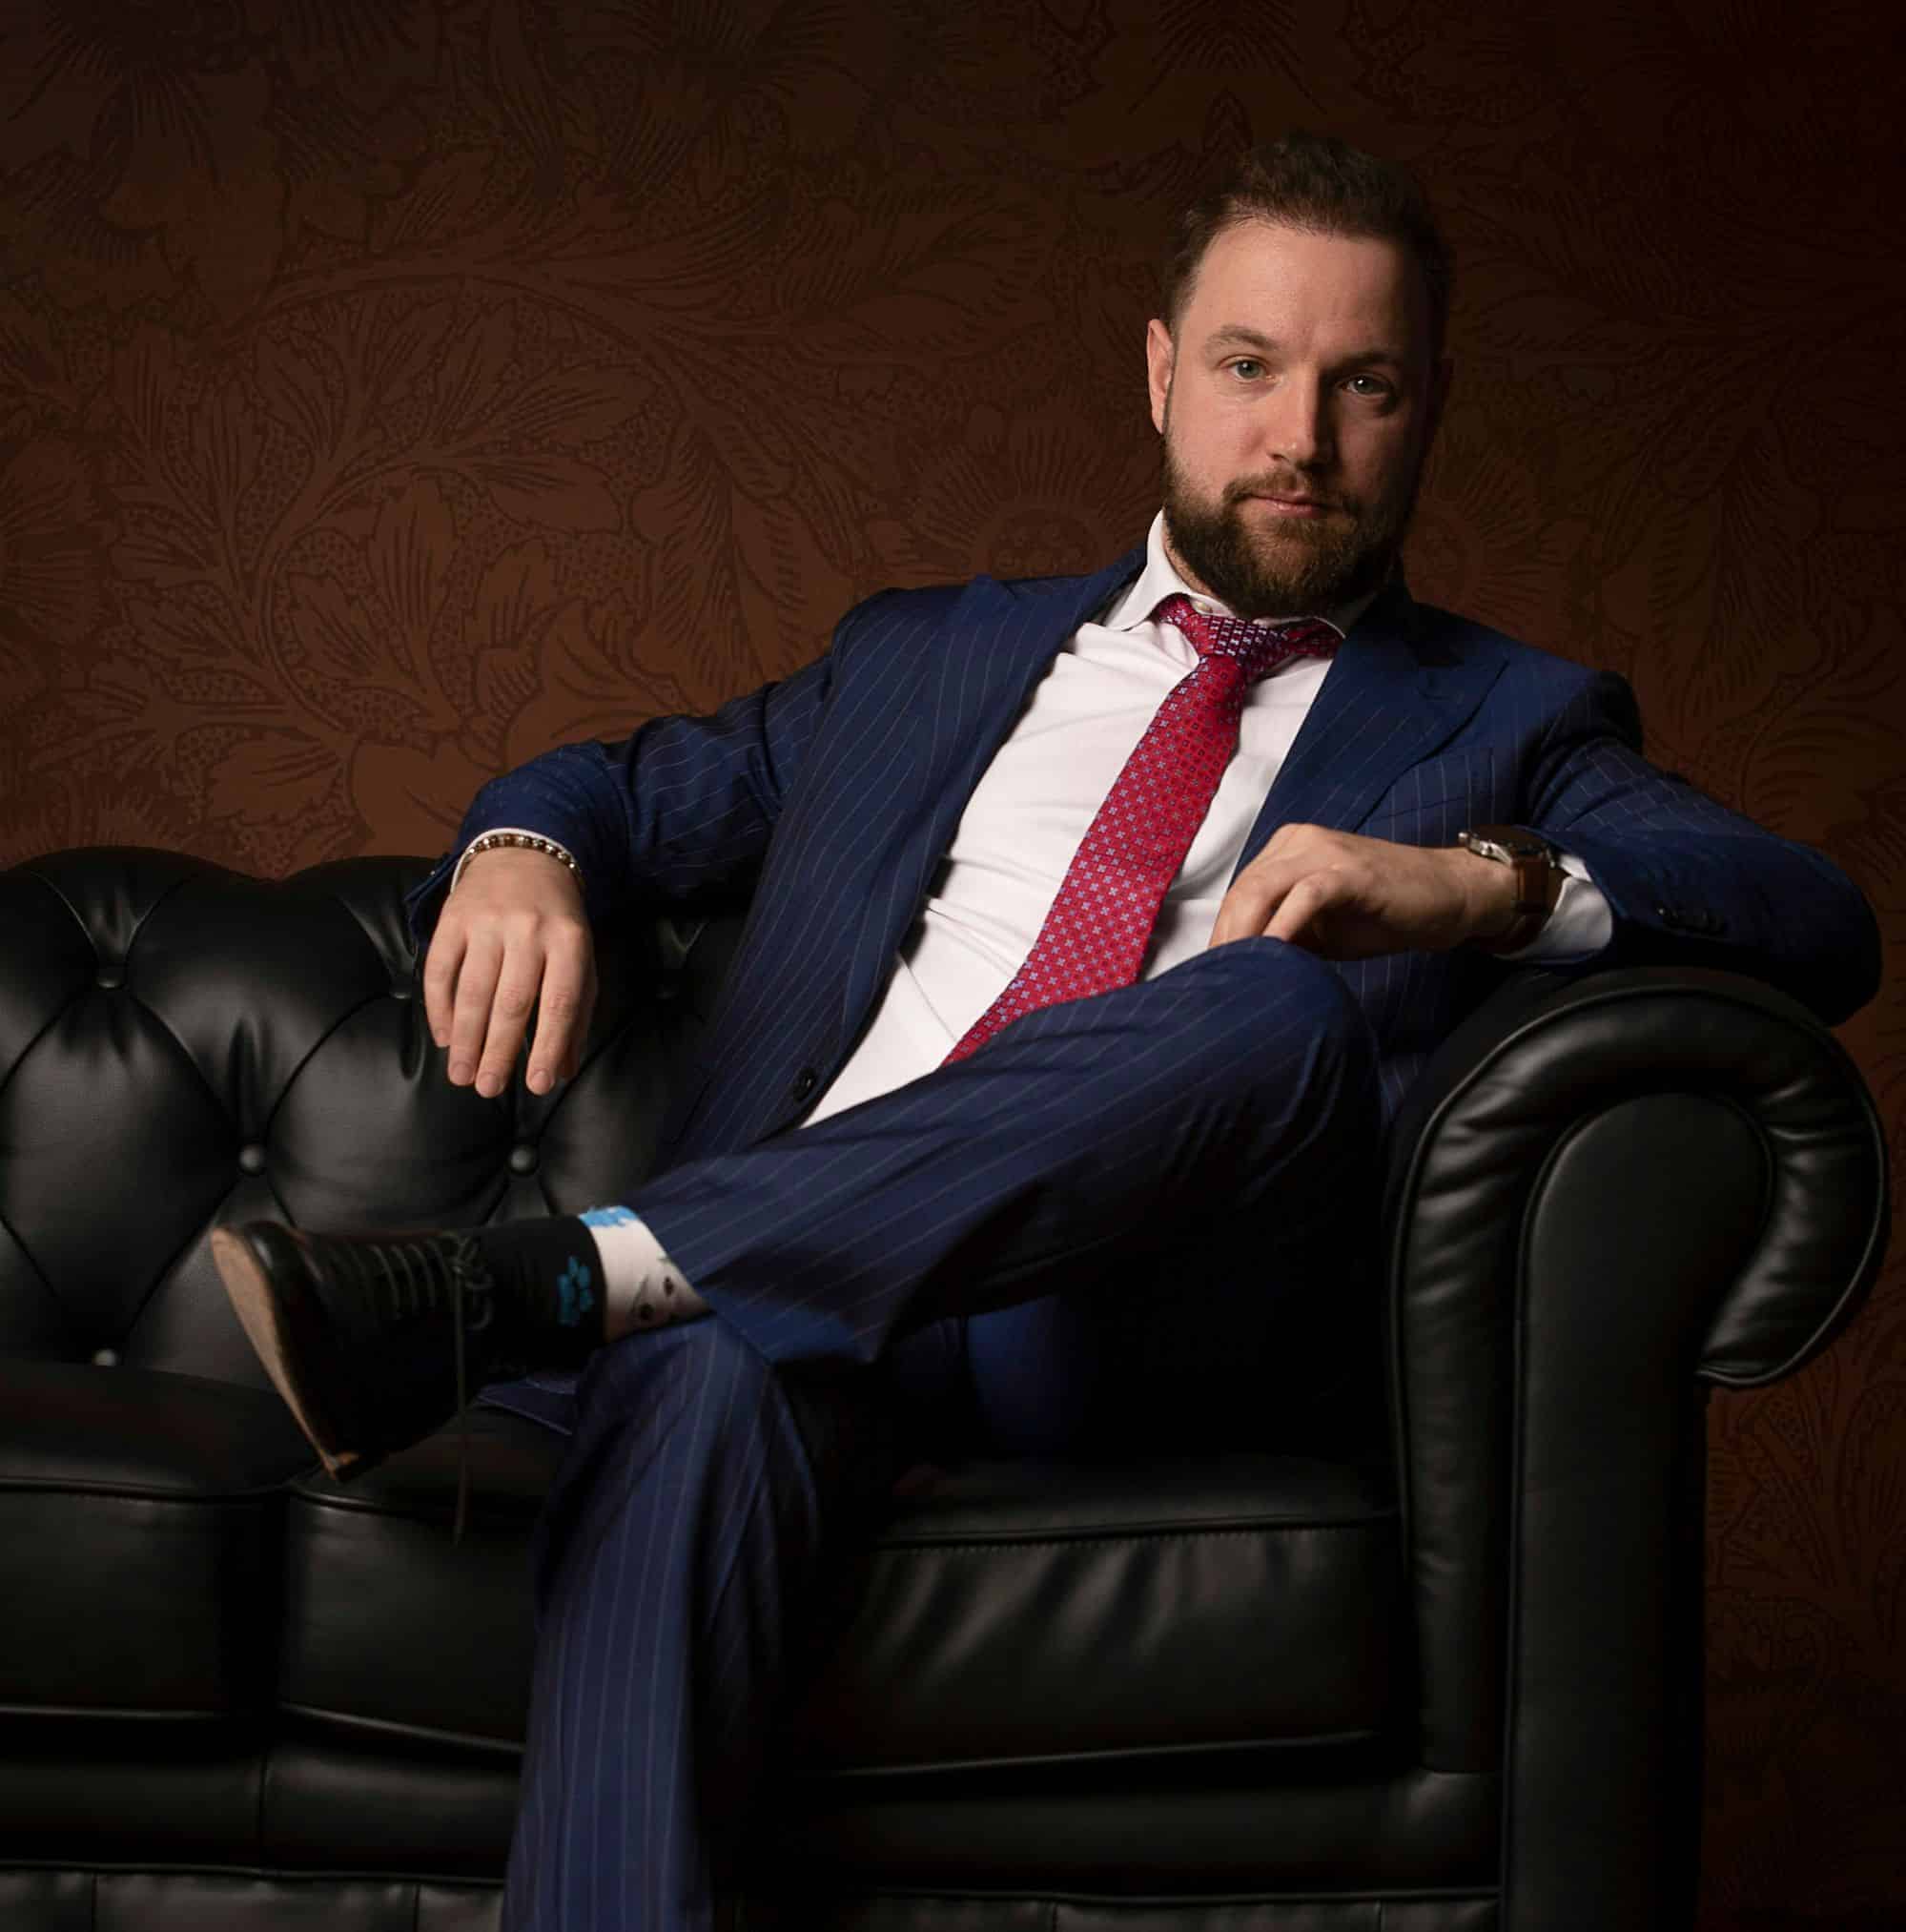 Un uomo con barba e capelli scuri, in abito blu e cravatta rossa, siede su un divano in pelle nera su uno sfondo a motivi scuri, incarnando l'etica dell'ufficio stile mentre sogna come creare un brand di moda.